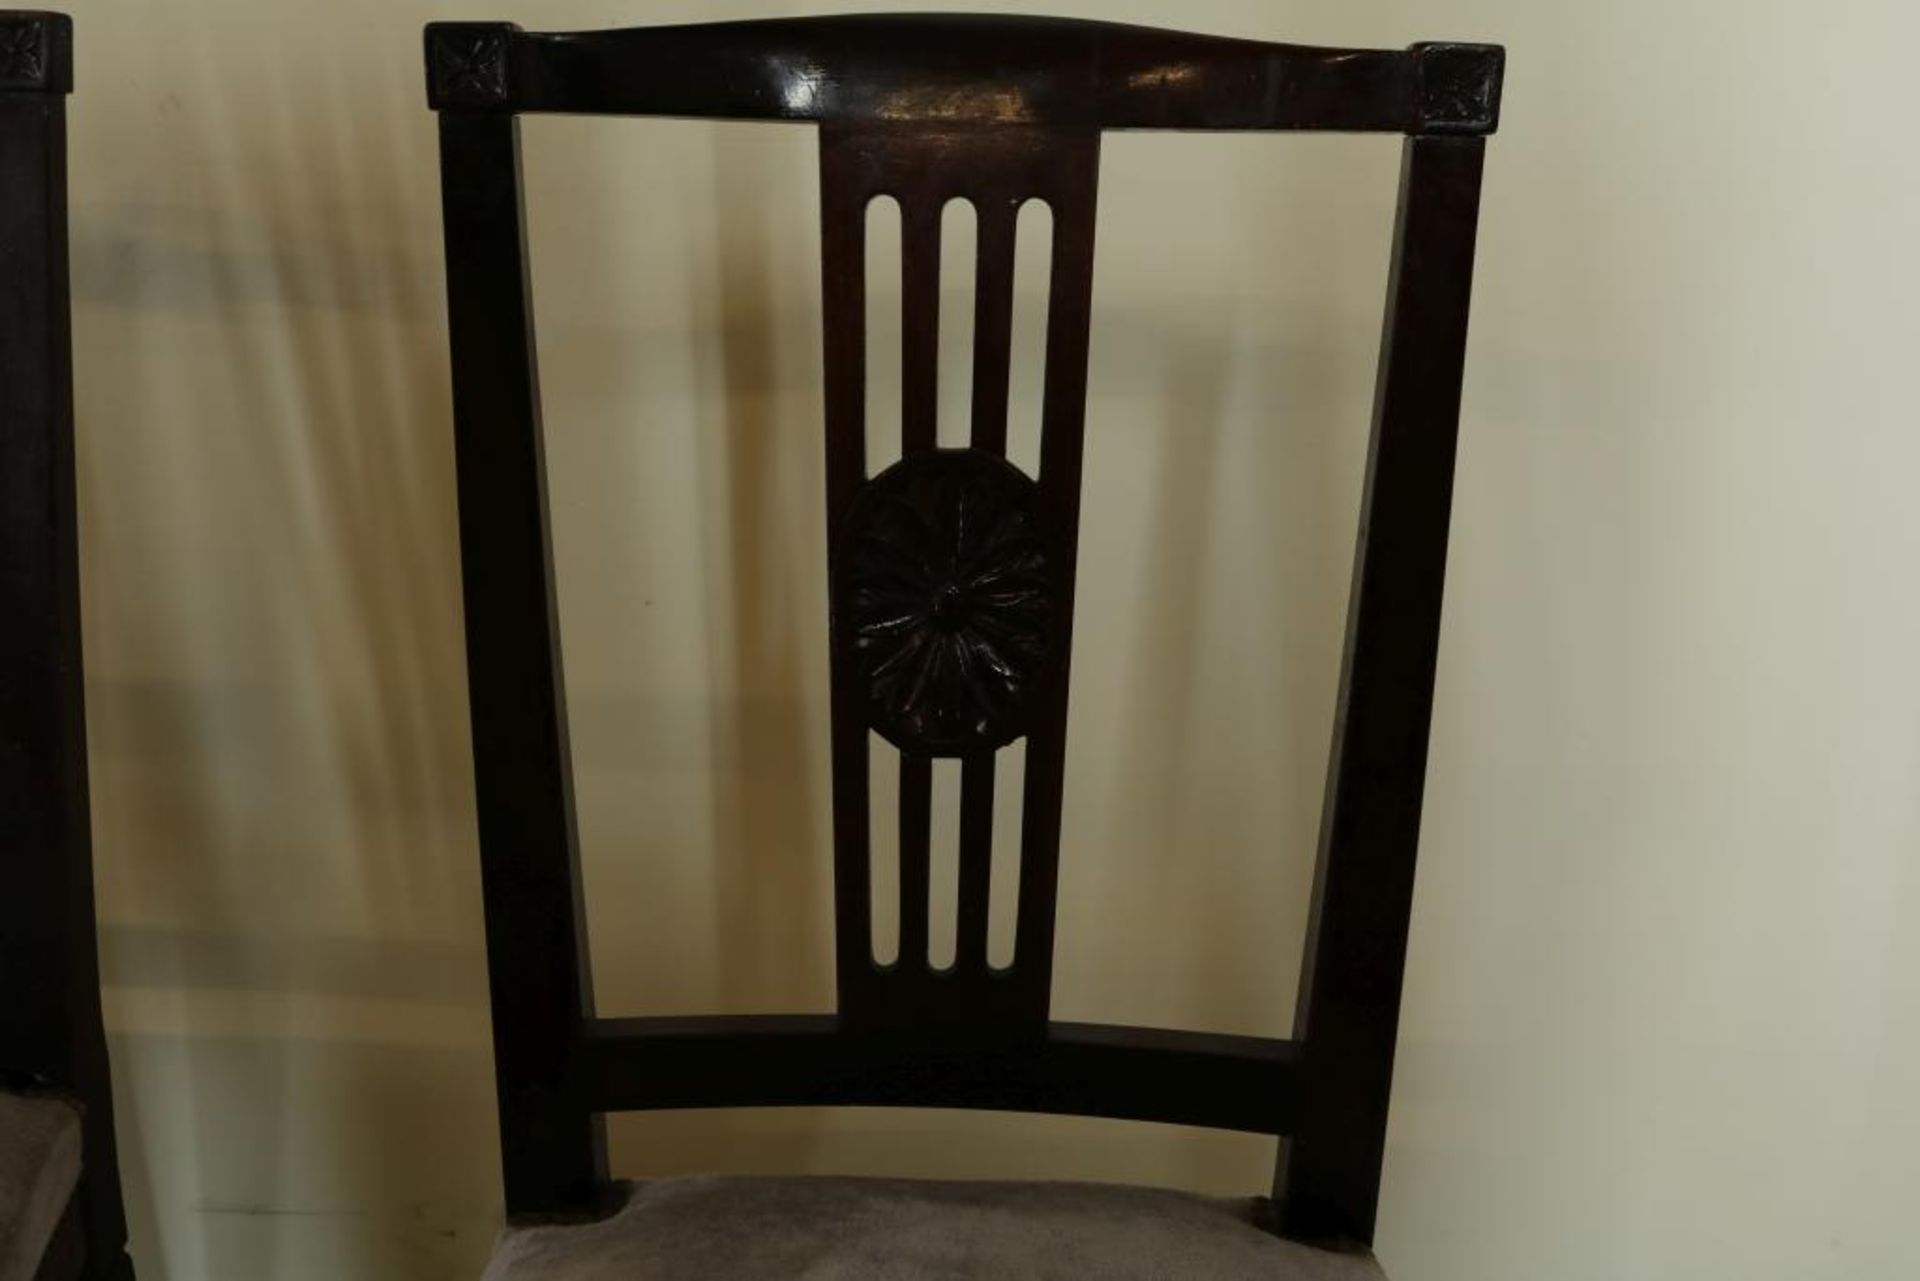 Serie van 8 gelakt houten stoelen met gestoken motieven, bekleed met paars velour - Bild 3 aus 3